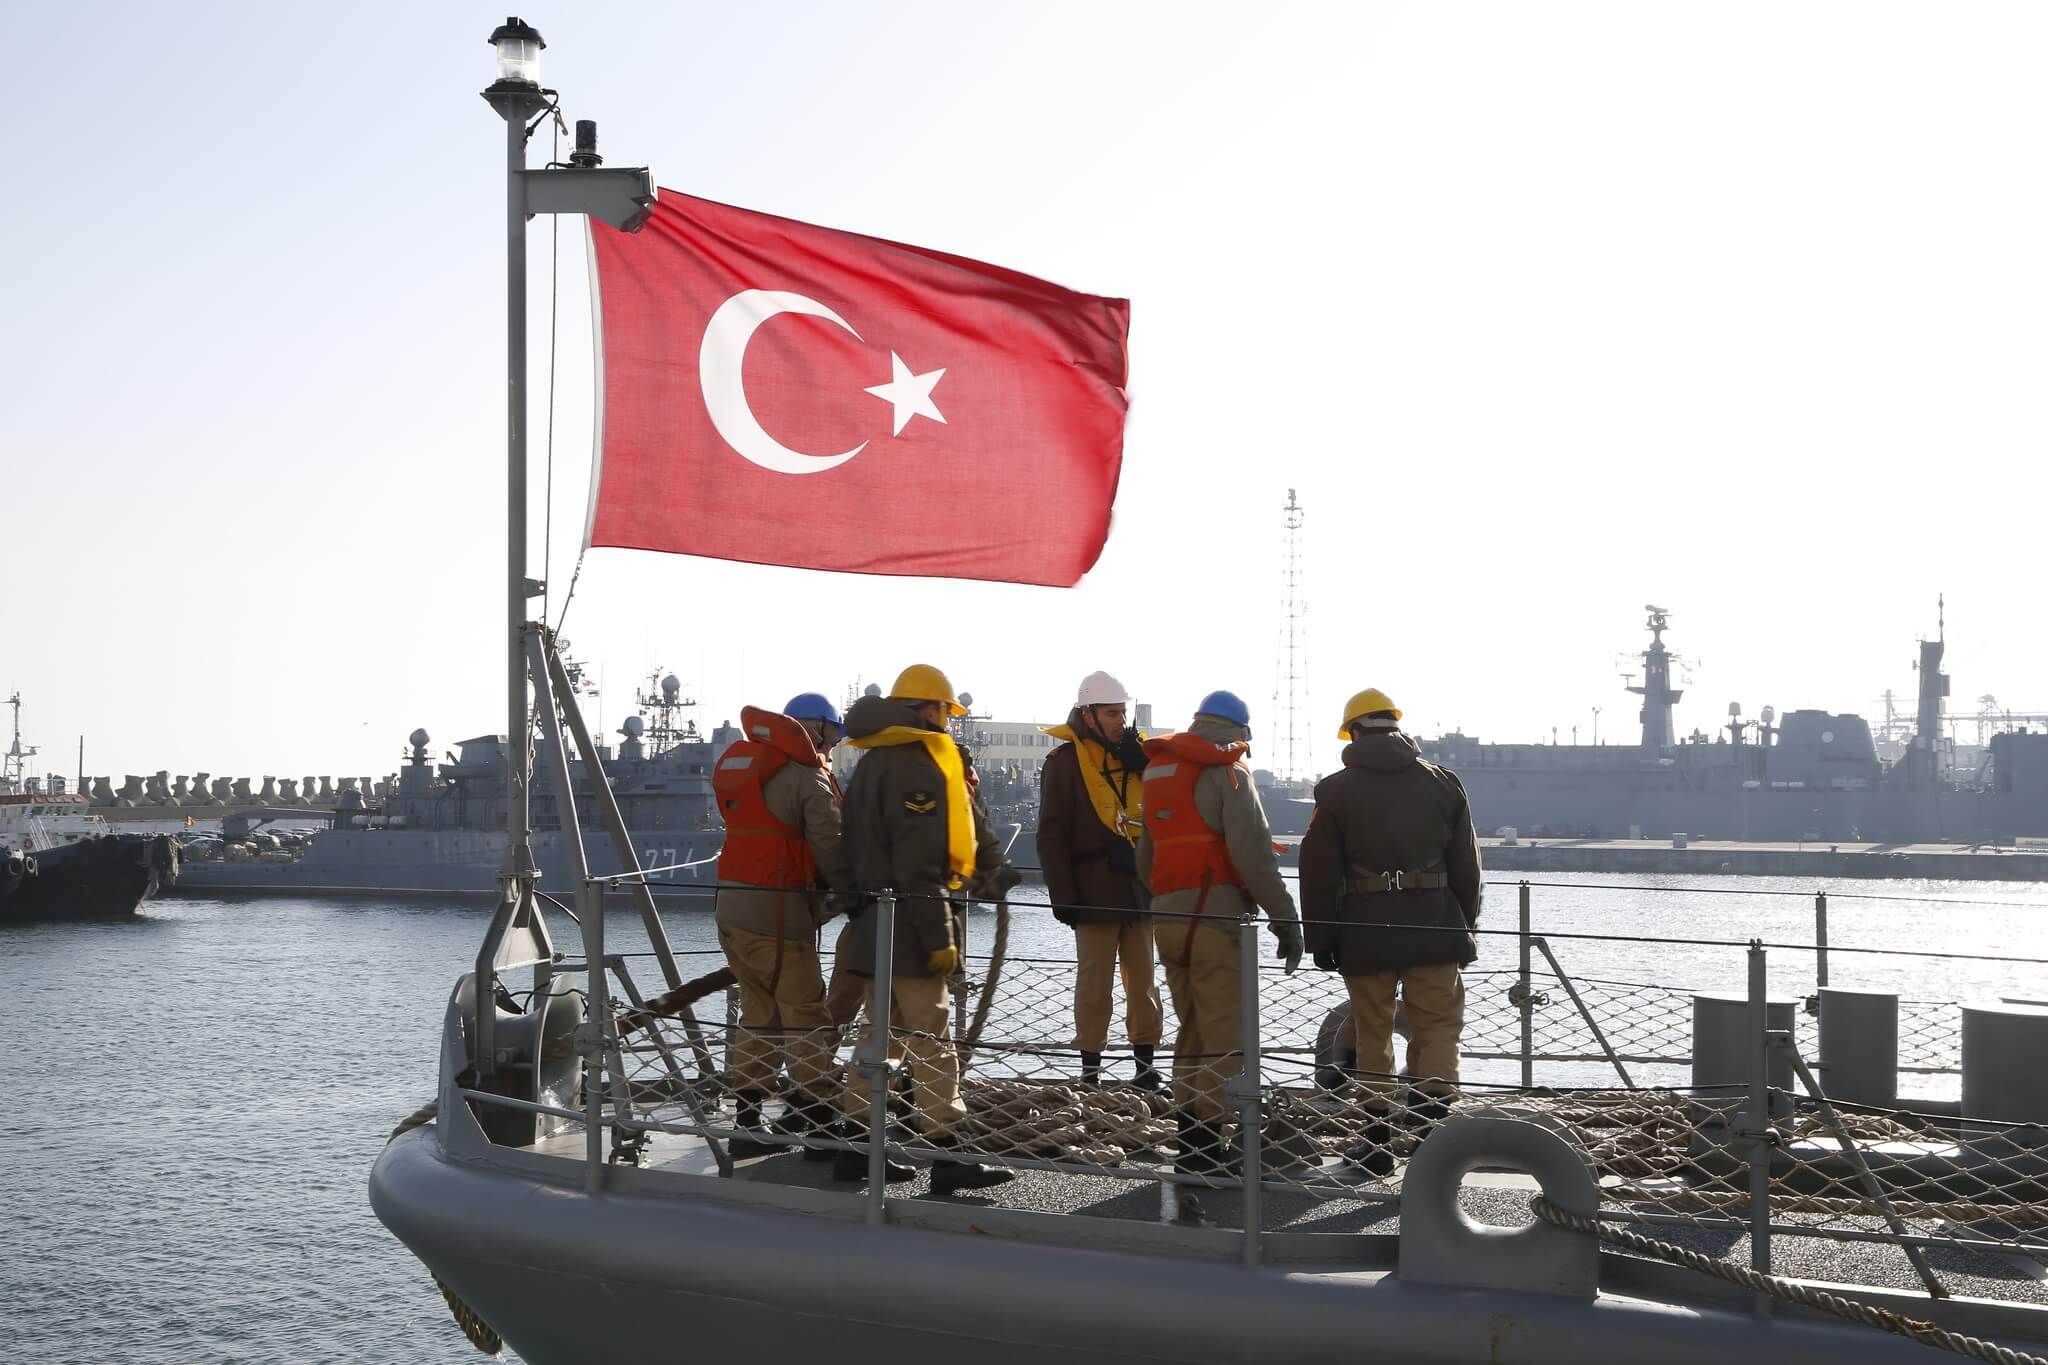 Dubbelboer - Turkse mariniers tijdens een NAVO-oefening in 2015. NATO